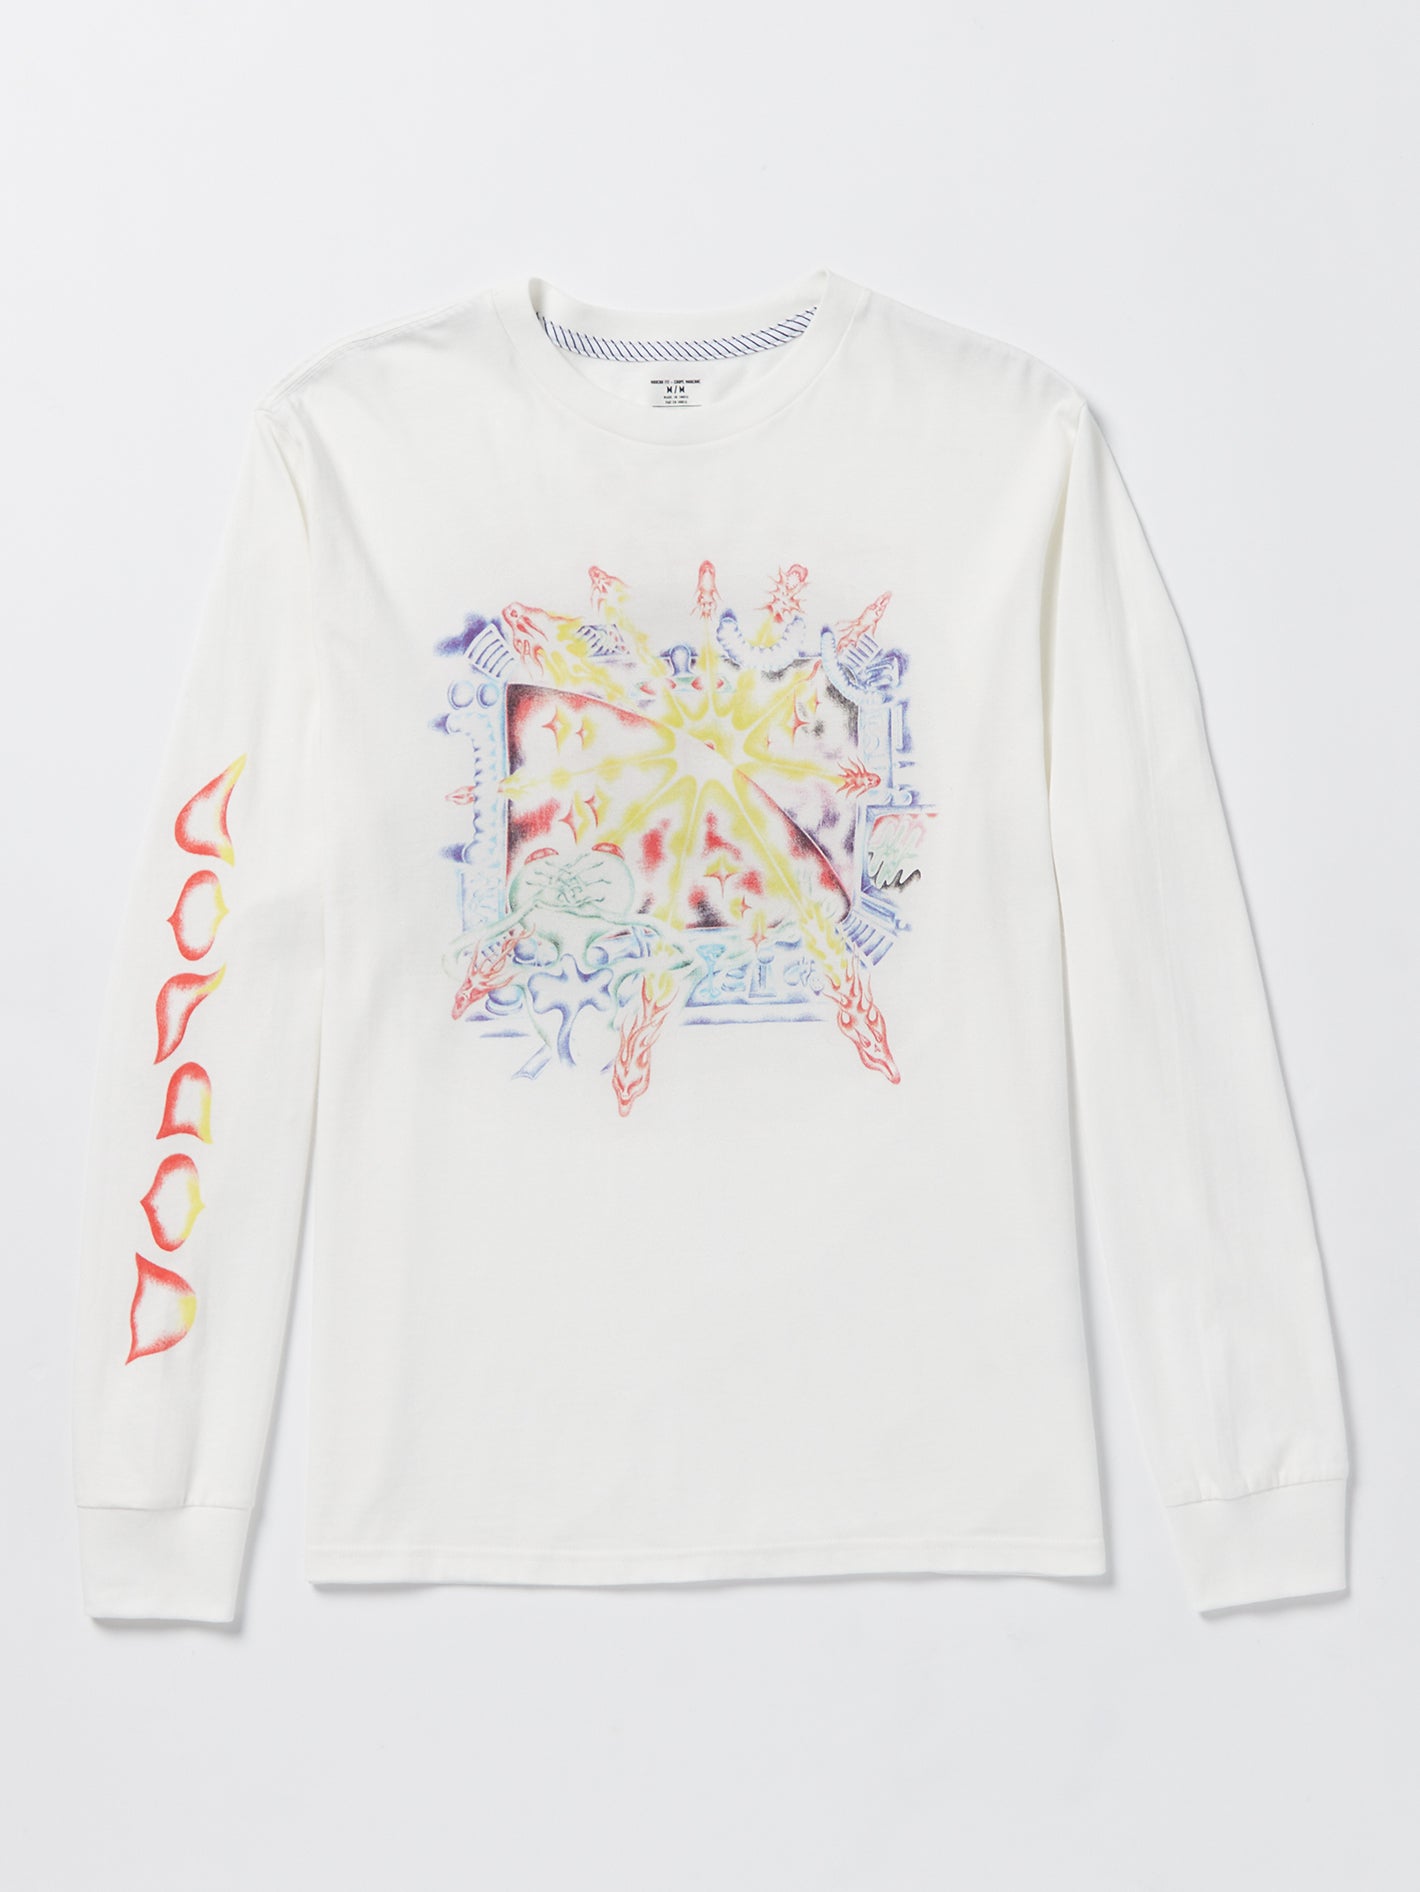 Louis Vuitton Pastel Monogram Tee Shirt